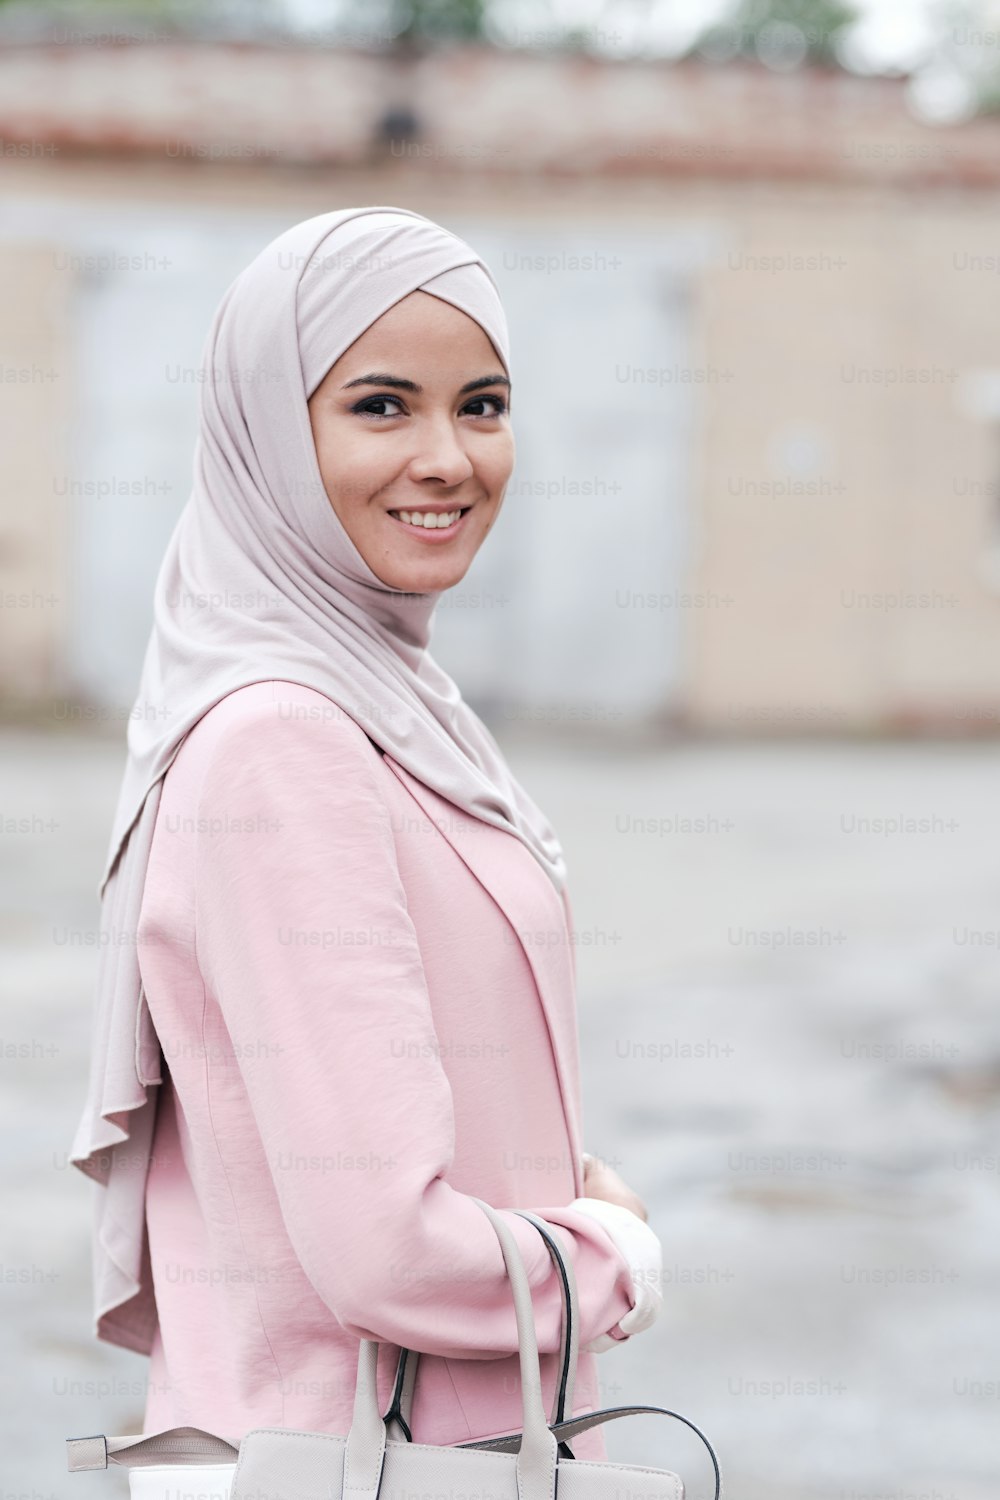 히잡과 핑크색 가디건을 입은 젊은 쾌활한 무슬림 여성이 핸드백을 들고 도시 환경에서 카메라 앞에서 웃고 있다